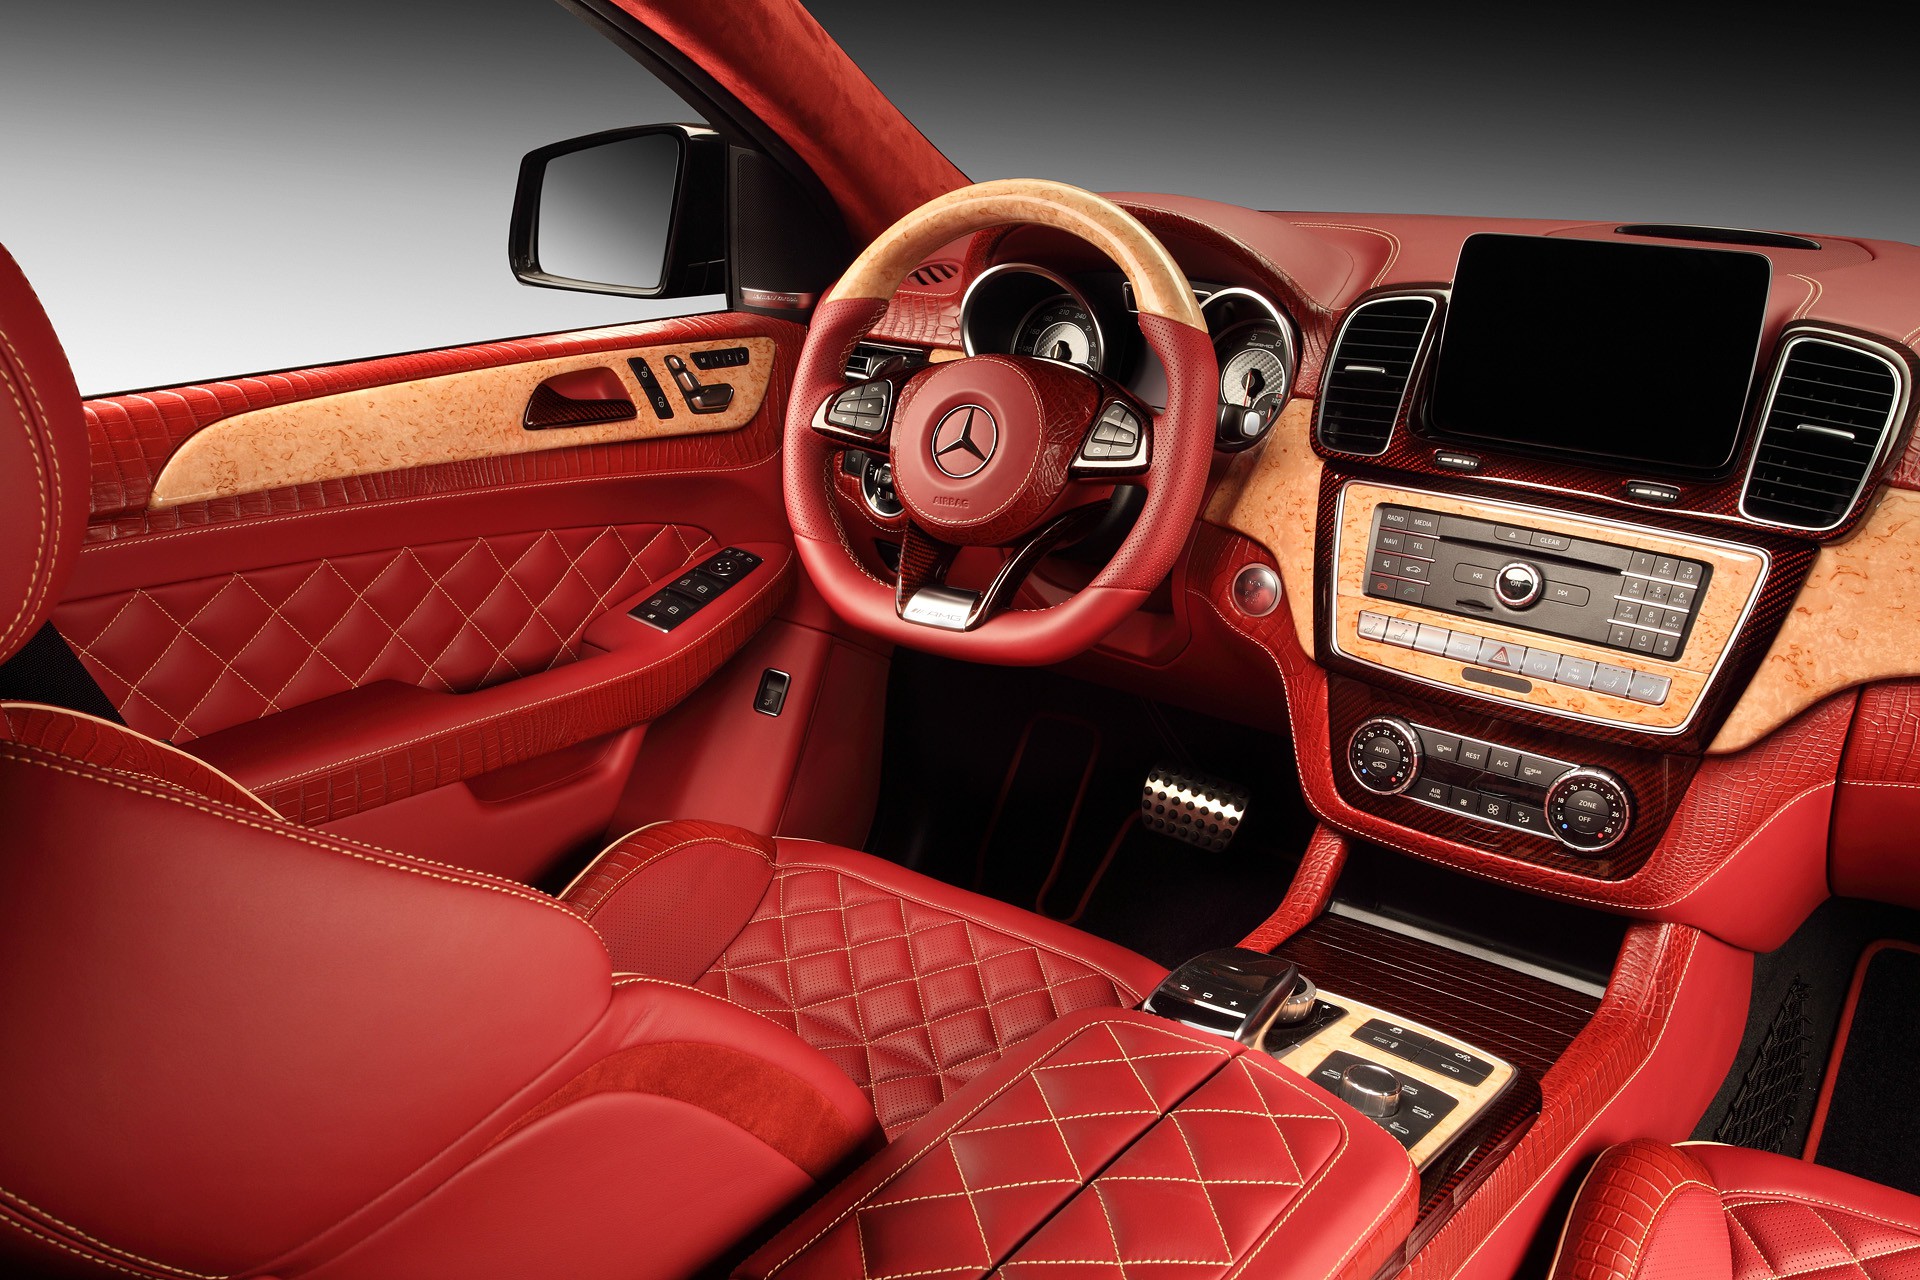 
Chiếc Mercedes GLE Coupe Inferno này có bộ áo nội thất cực kỳ bắt mắt trong màu đỏ rực cùng các chi tiết màu vàng đồng của gỗ làm điểm nhấn.
